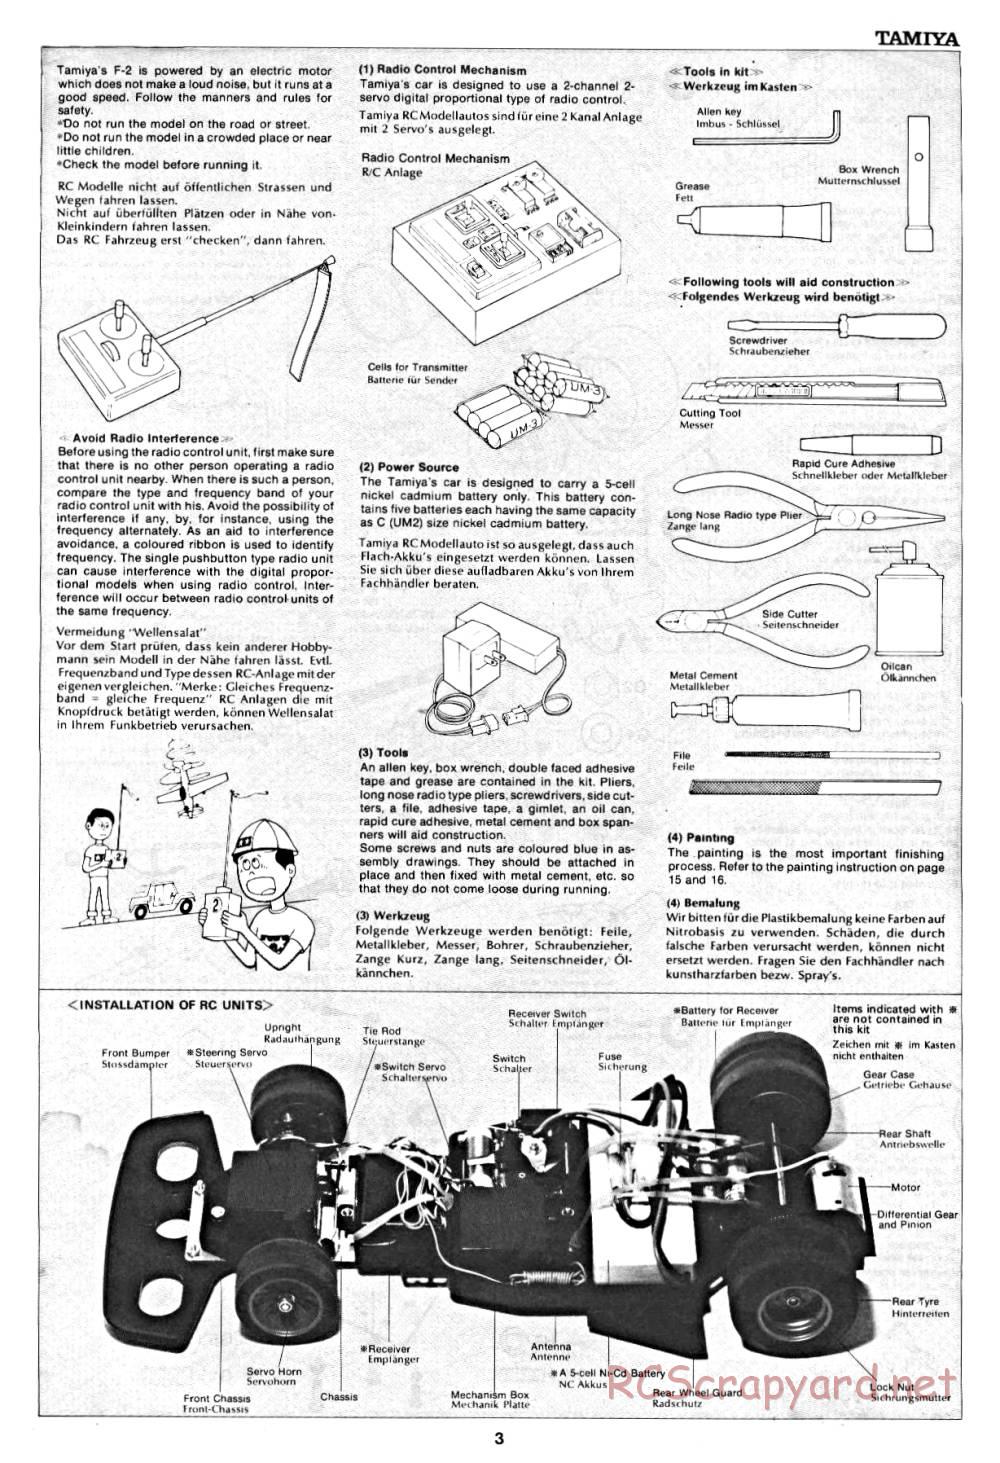 Tamiya - March 782 BMW (F2) - 58013 - Manual - Page 3